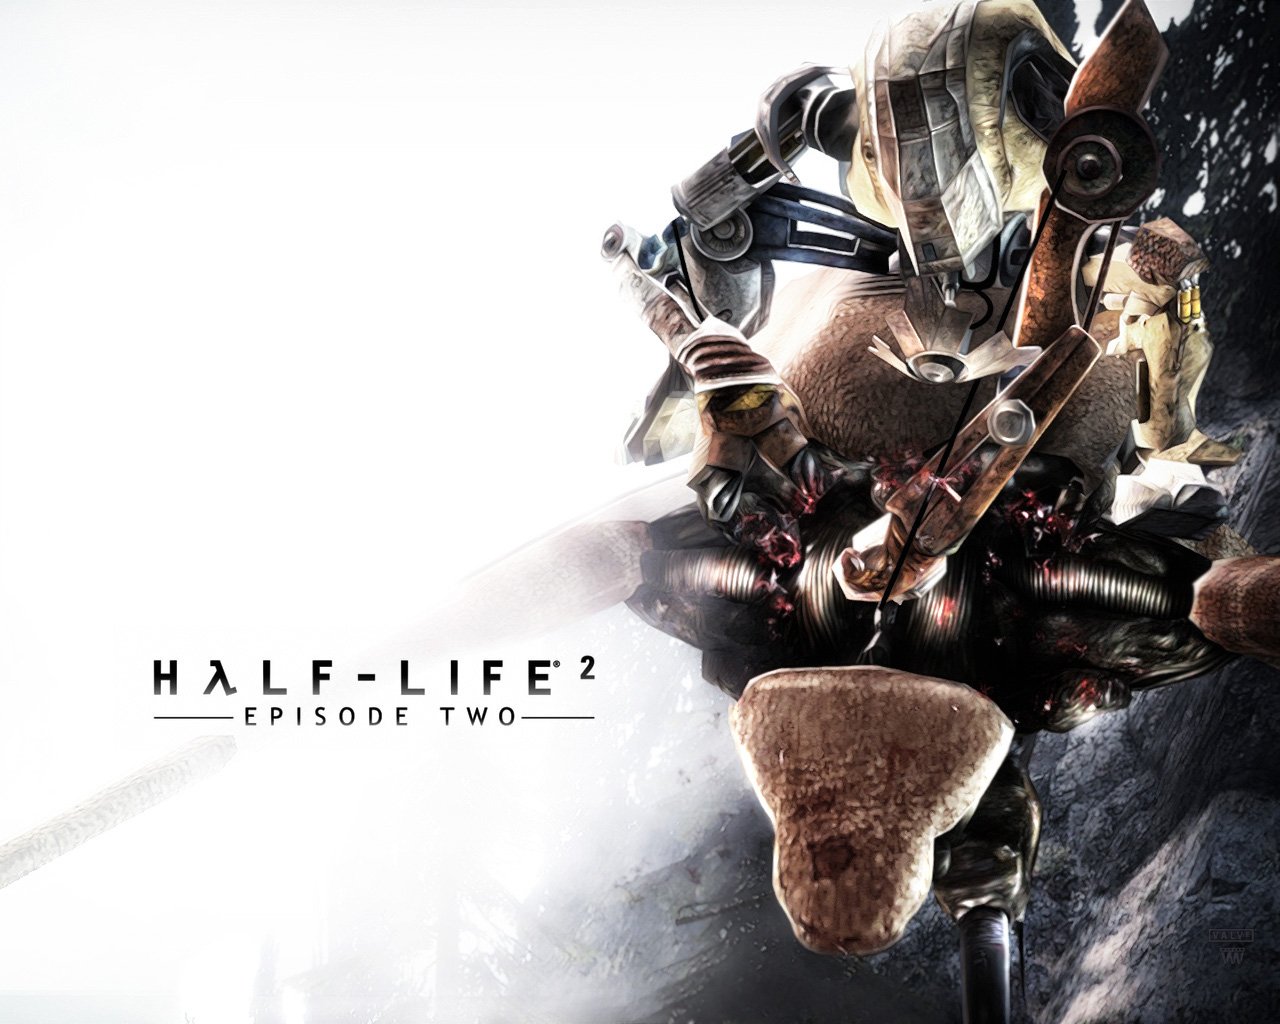 Half Life, Video games, Half Life 2 Wallpaper